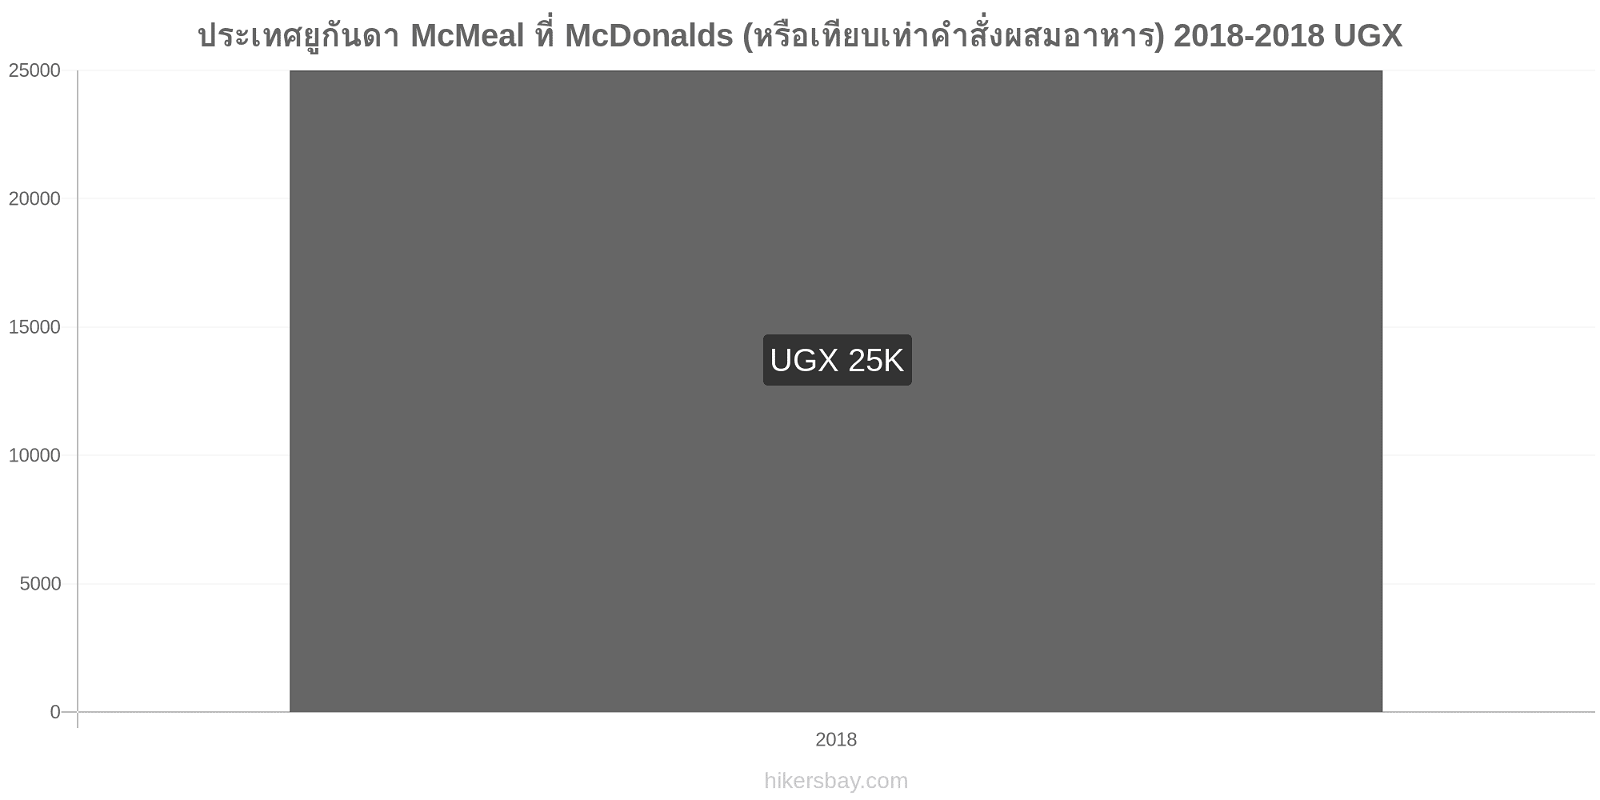 ประเทศยูกันดา การเปลี่ยนแปลงราคา McMeal ที่ McDonalds (หรือเทียบเท่าคำสั่งผสมอาหาร) hikersbay.com